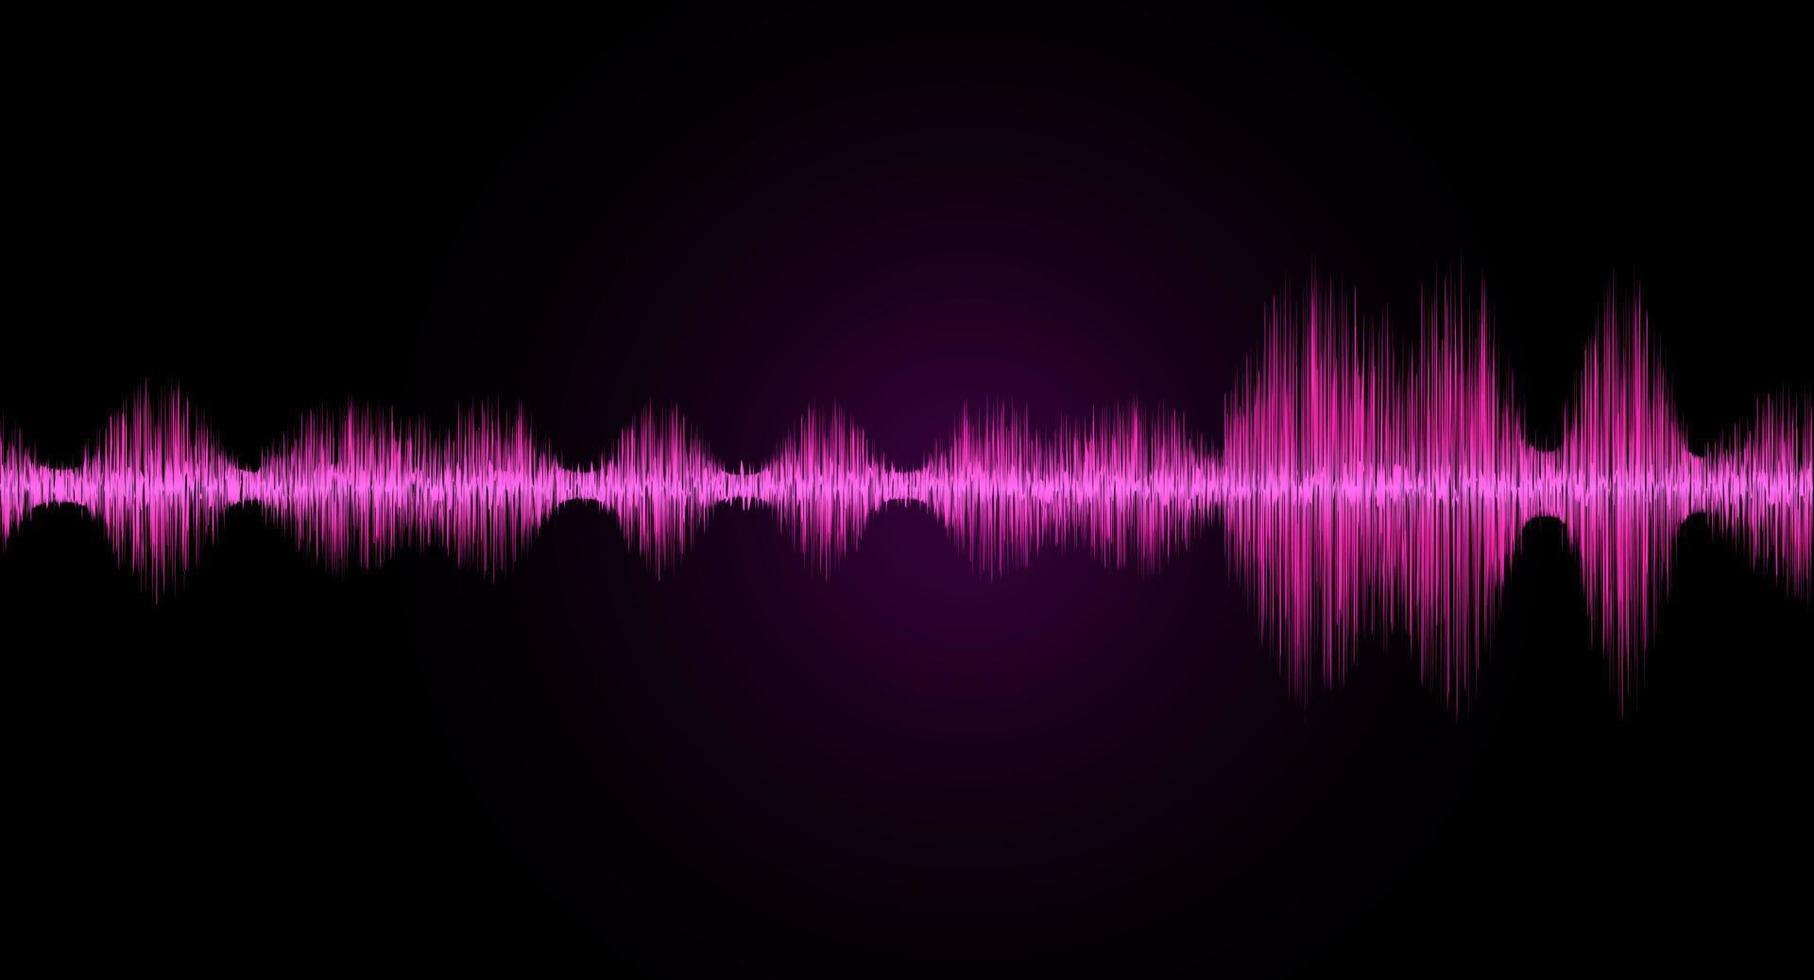 ondas sonoras de luz oscilante. onda do terremoto e conceito da indústria da música. ilustração vetorial. vetor